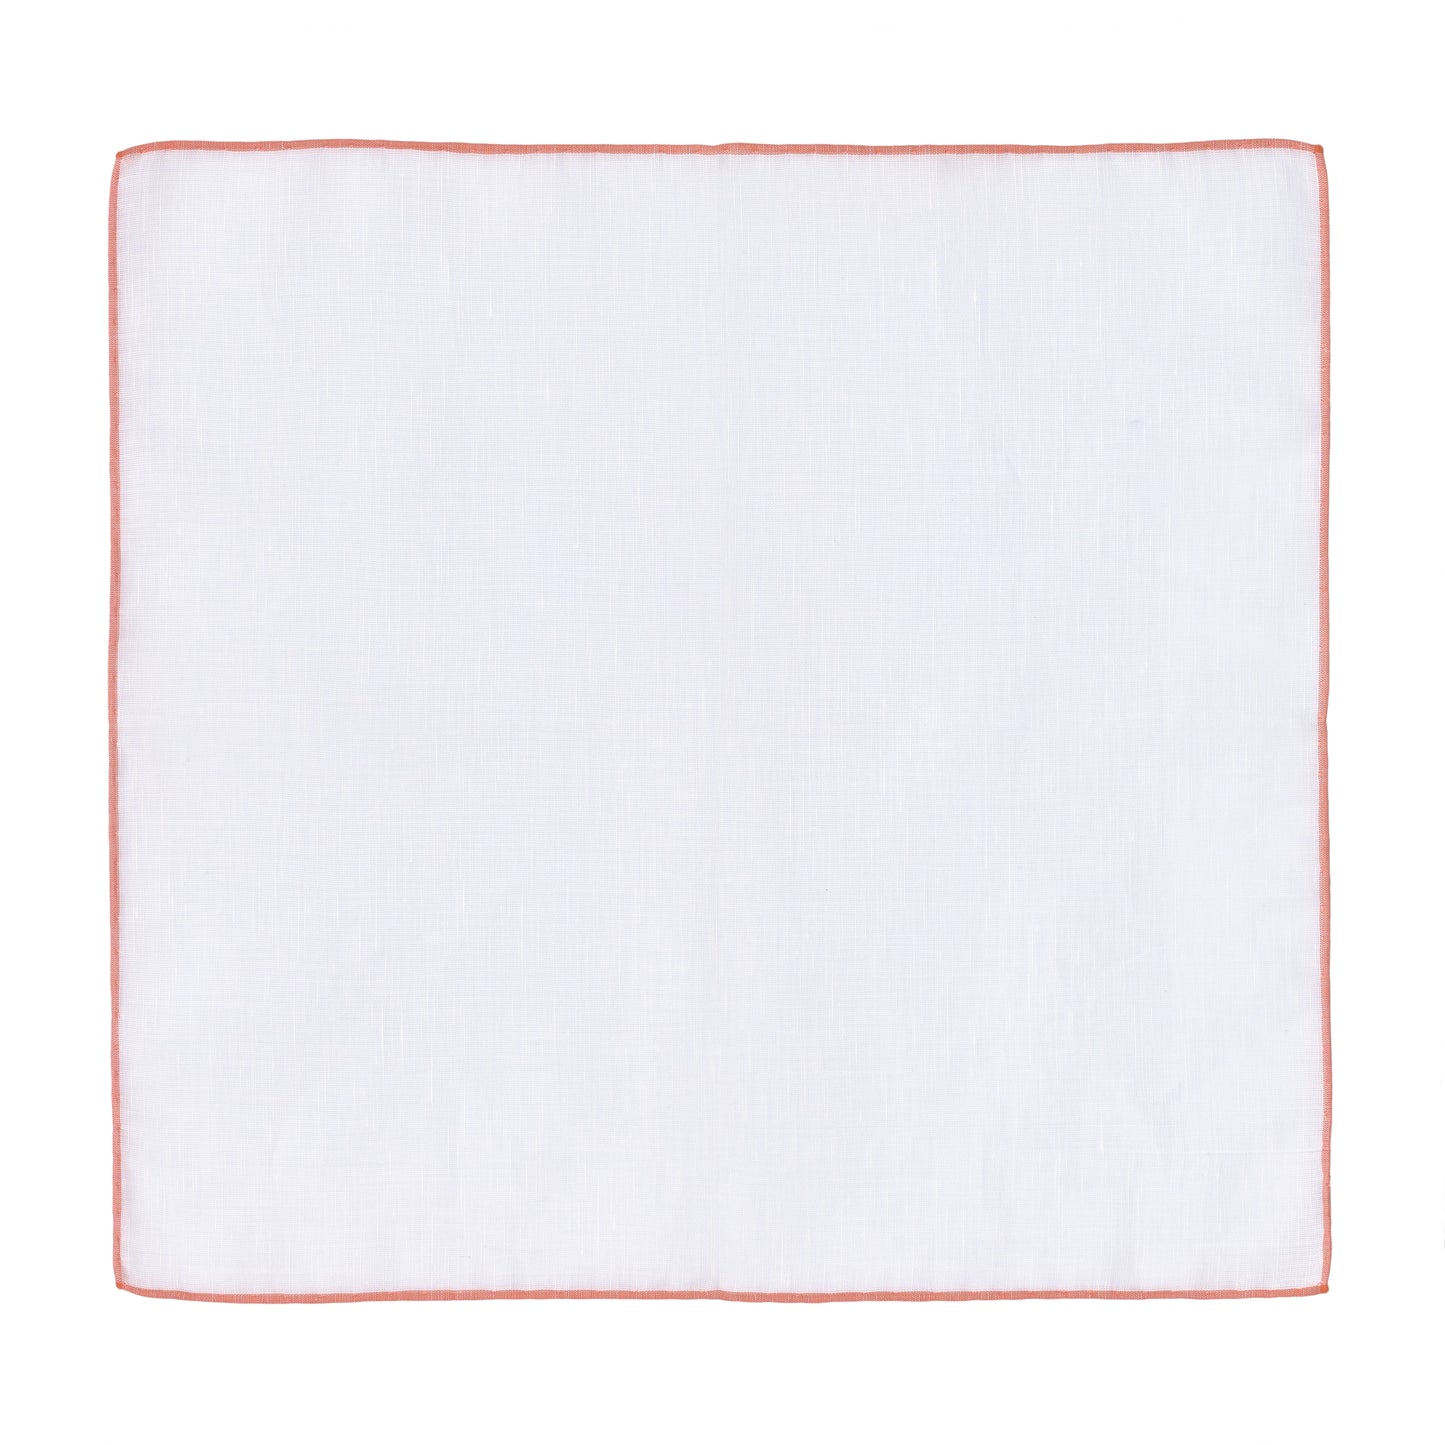 Cotton-Linen Pocket Square in White and Orange